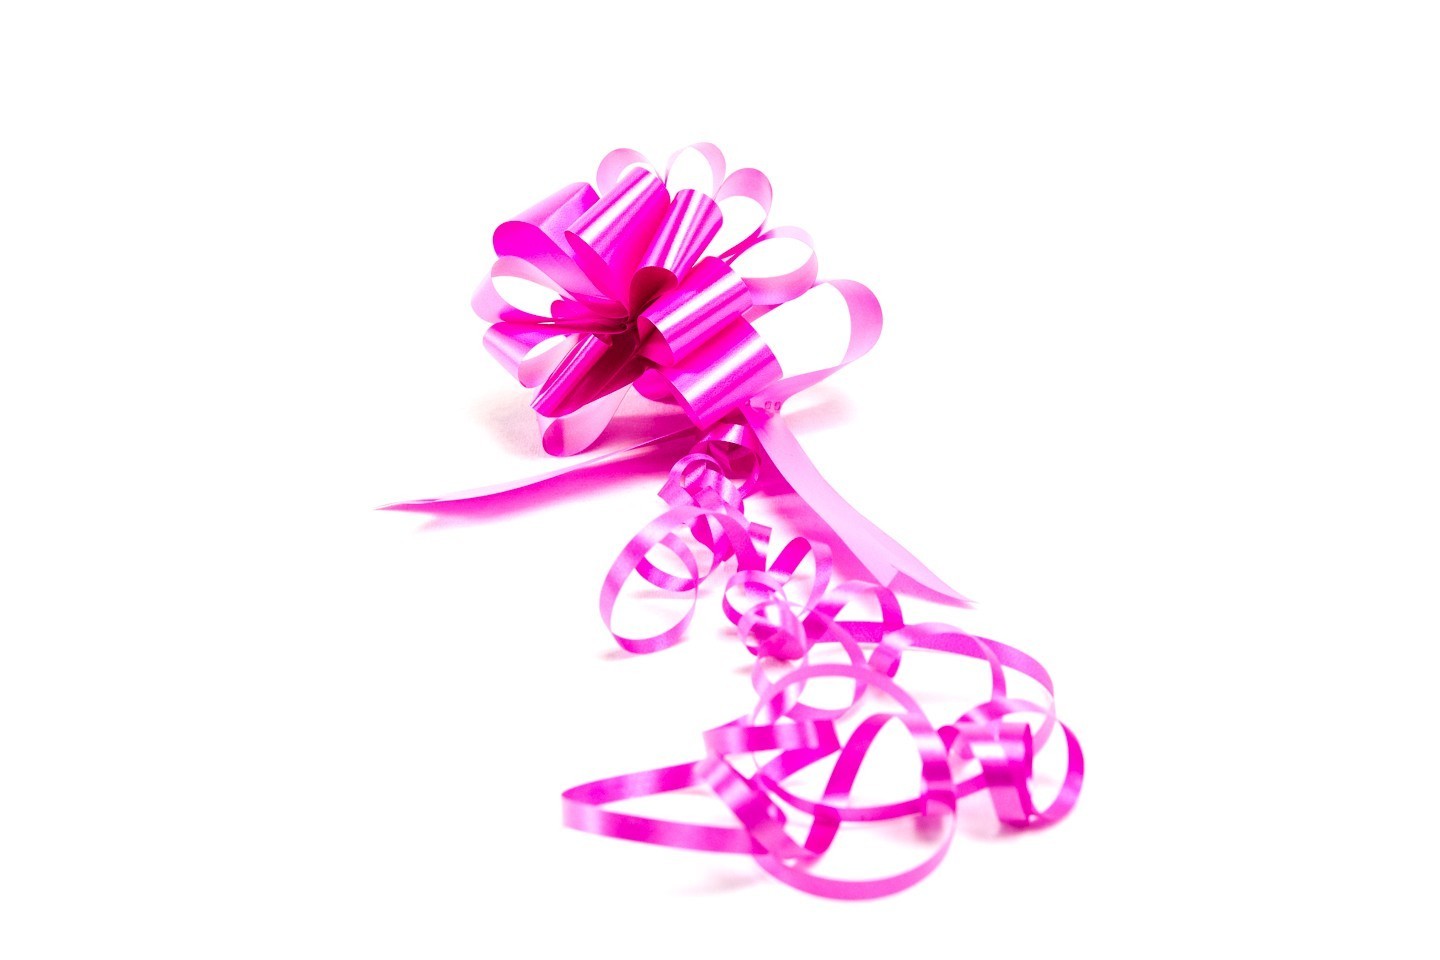 Lazos automatico para regalos varios colores estampado rosas